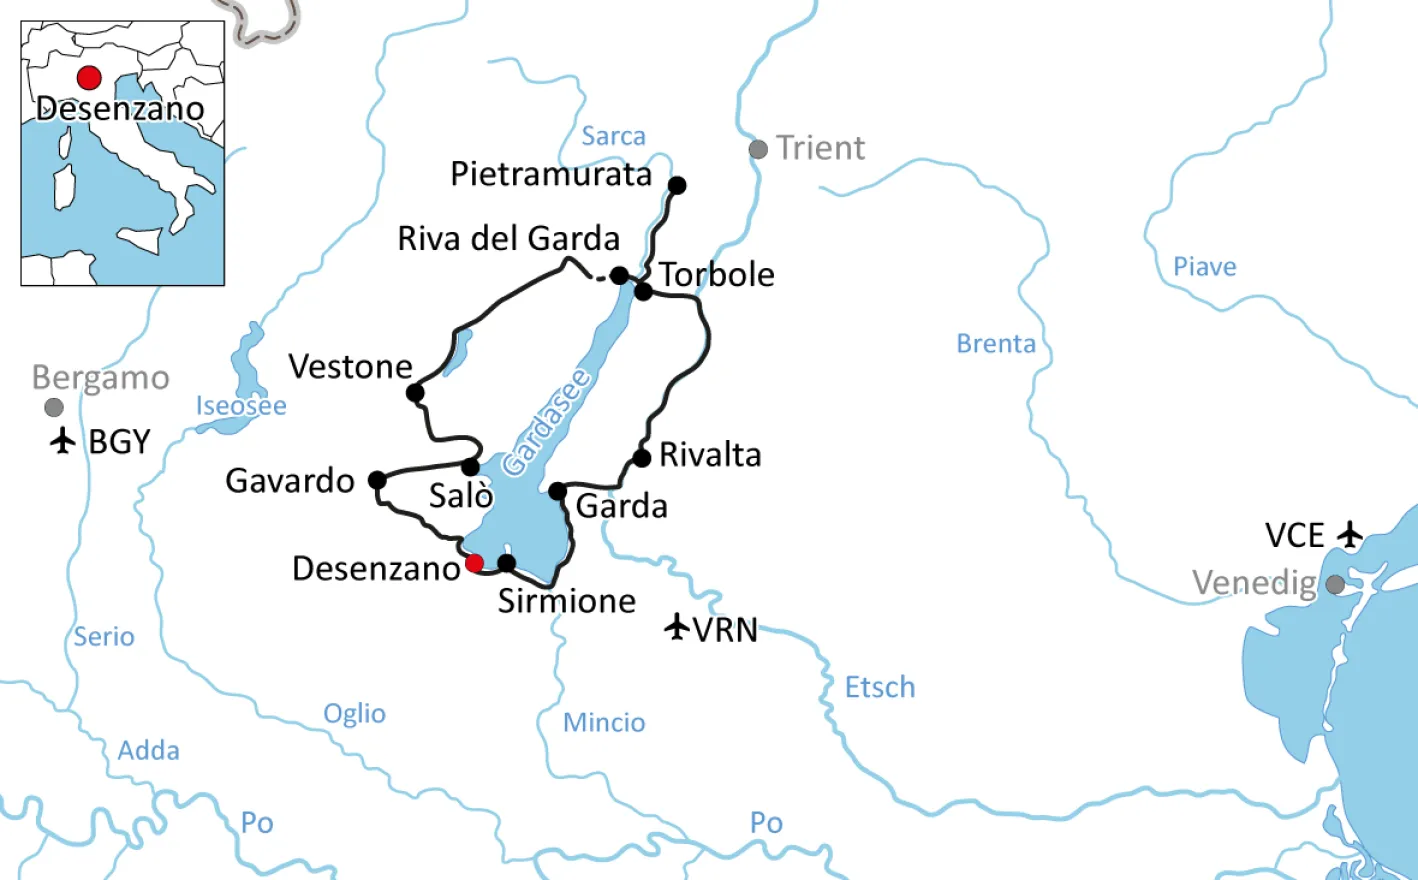 Map for cycling around Lake Garda